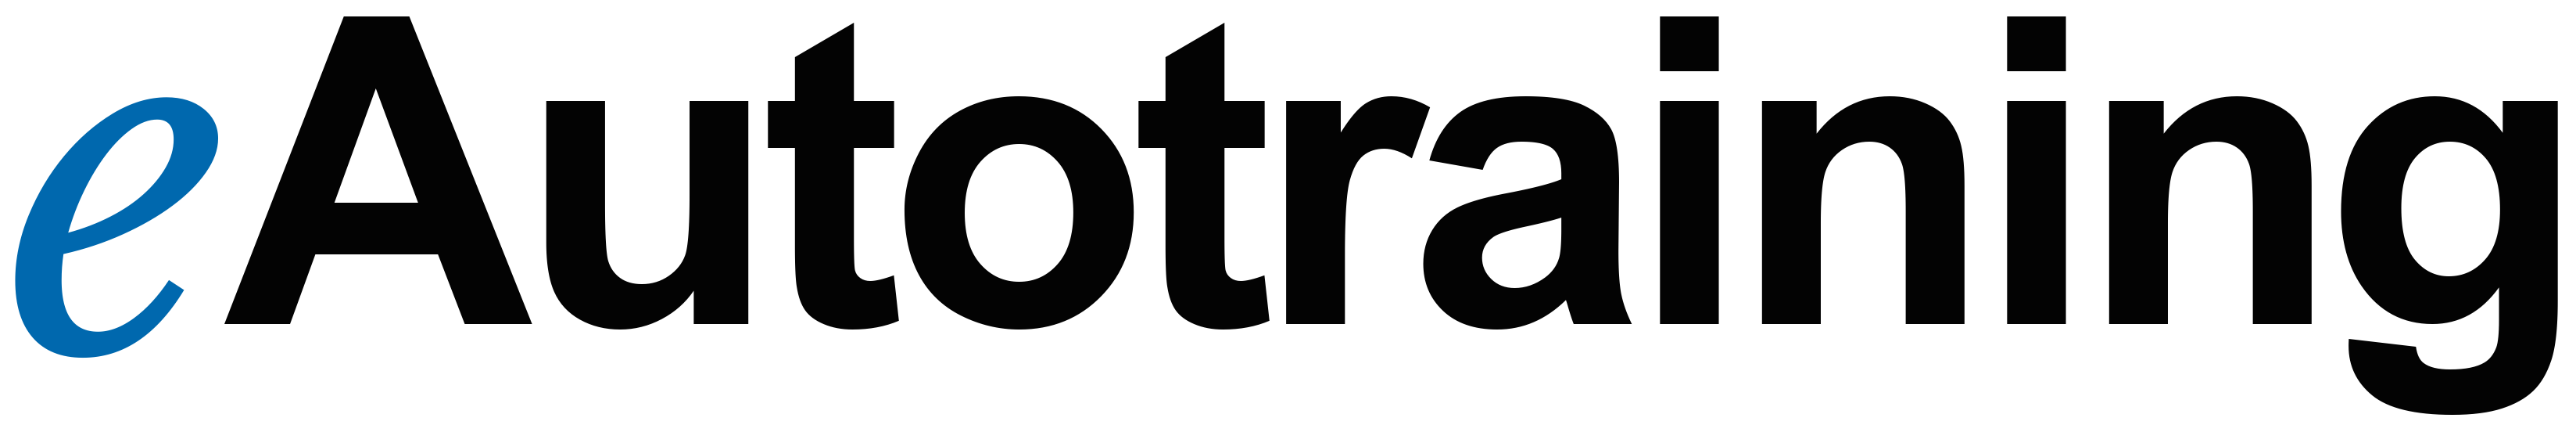 eauto logo testimonial